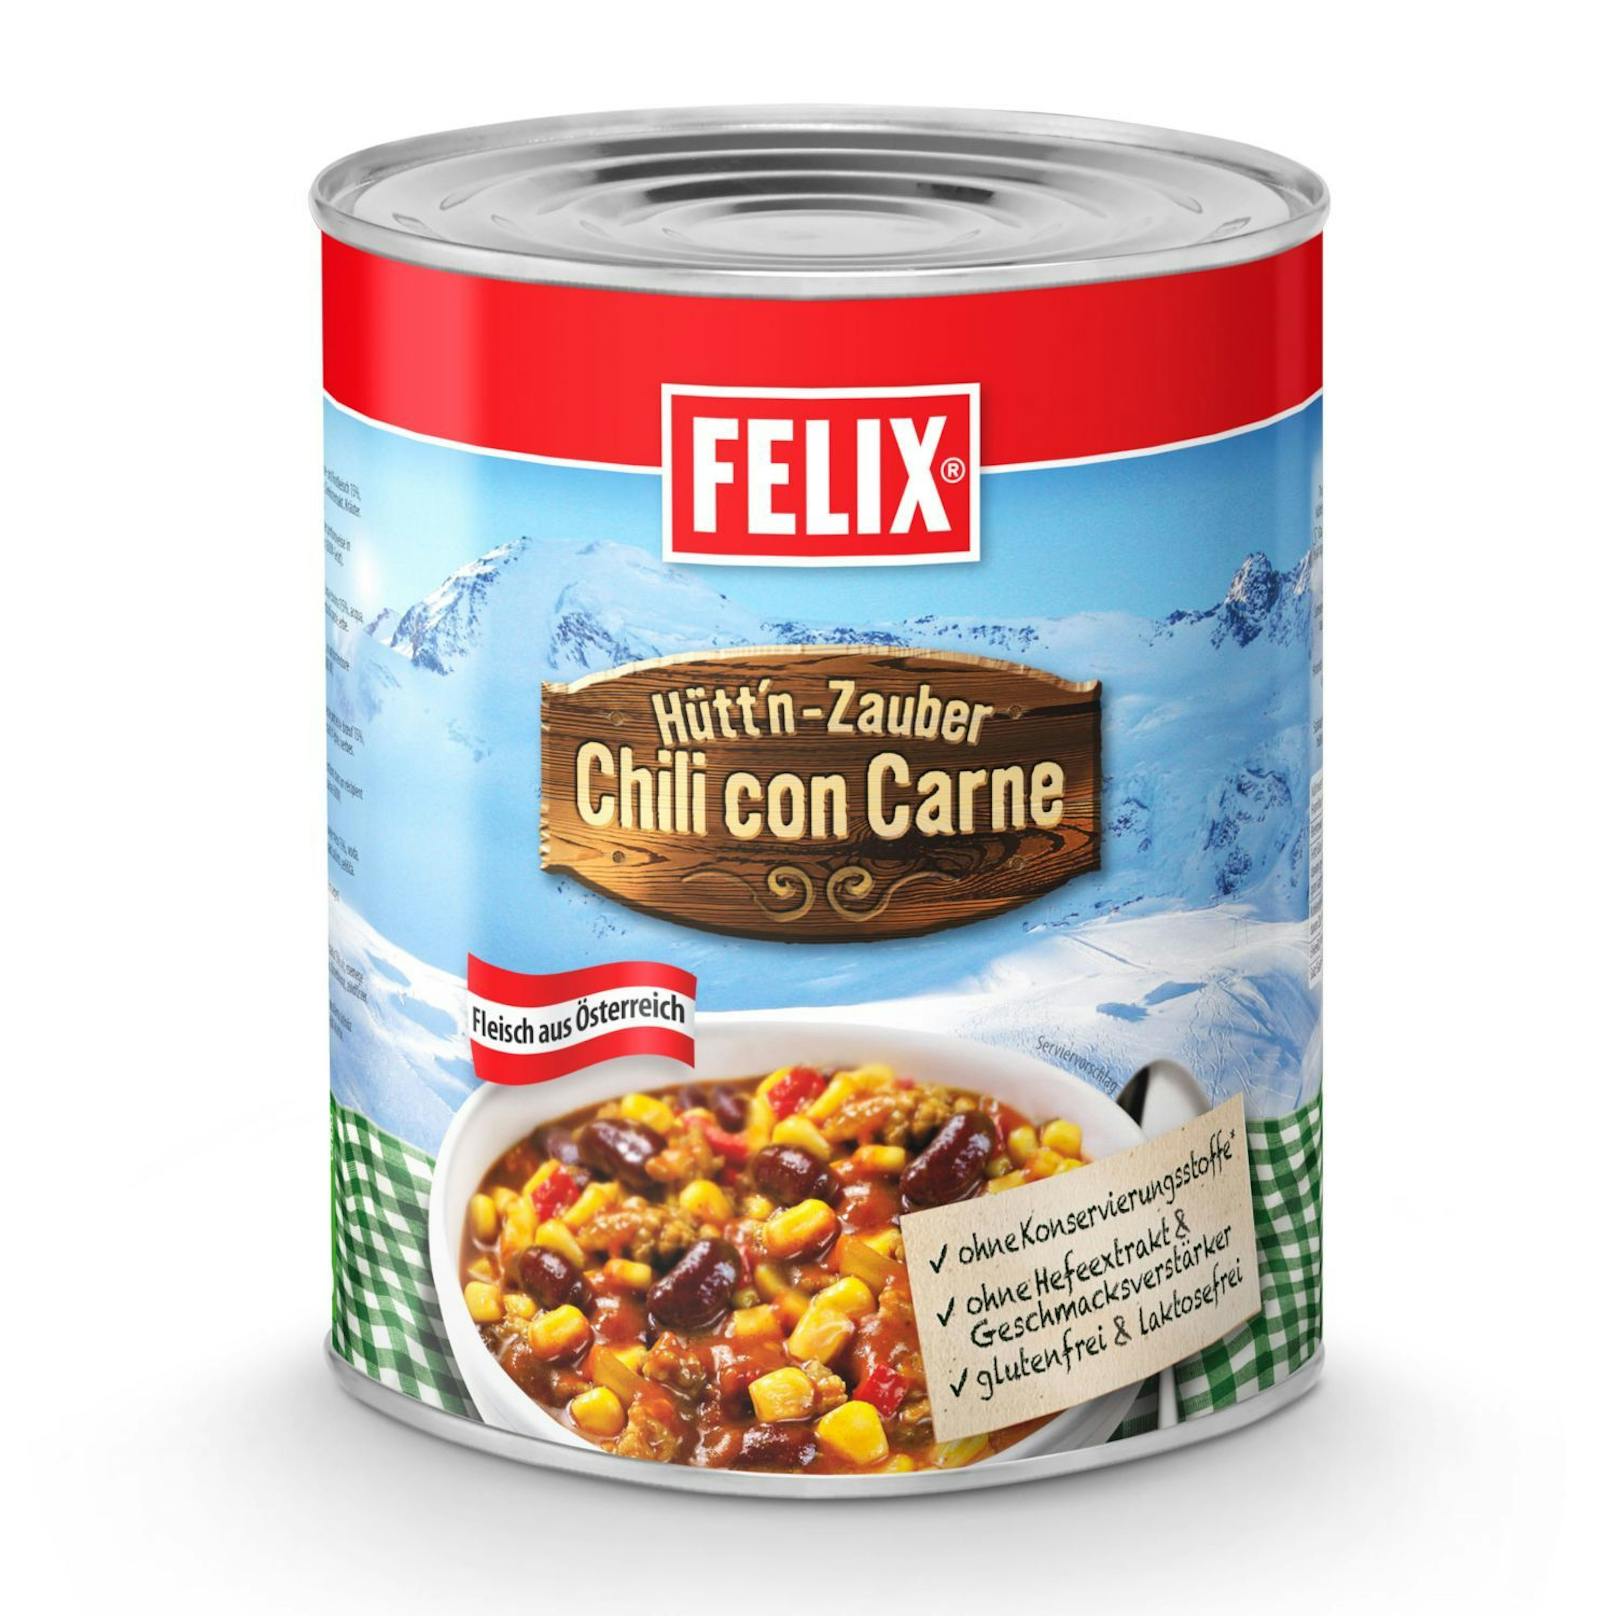 Chili con Carne von FELIX - hier geht's zum Gericht: <strong><a target="_blank" href="https://www.hofer.at/de/p.felix-fertiggericht-chili-con-carne.000000000156105002.html">https://www.hofer.at</a></strong>